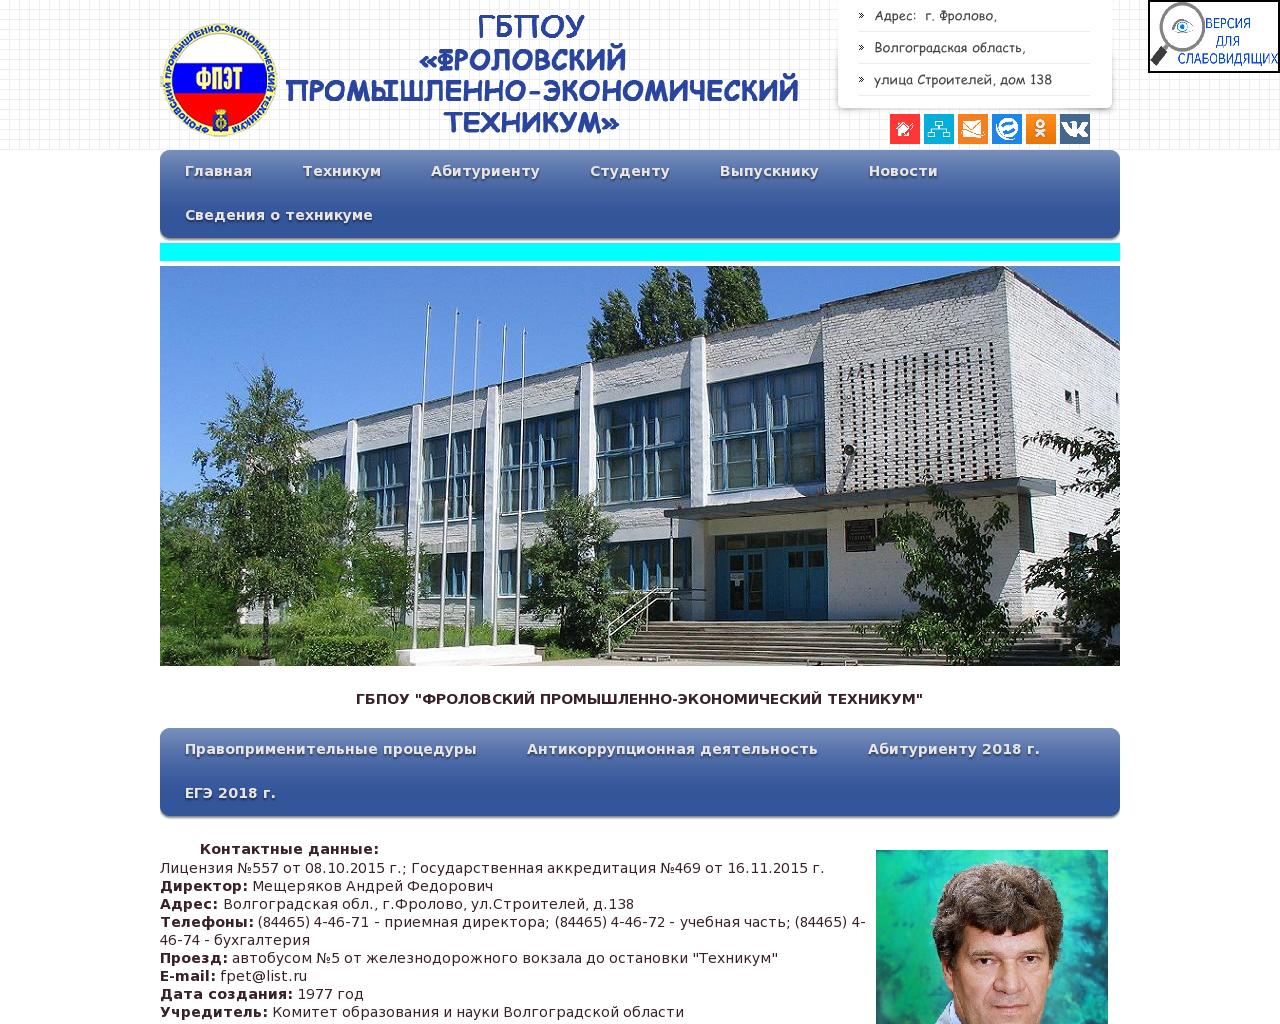 Изображение сайта fpet2010.ru в разрешении 1280x1024